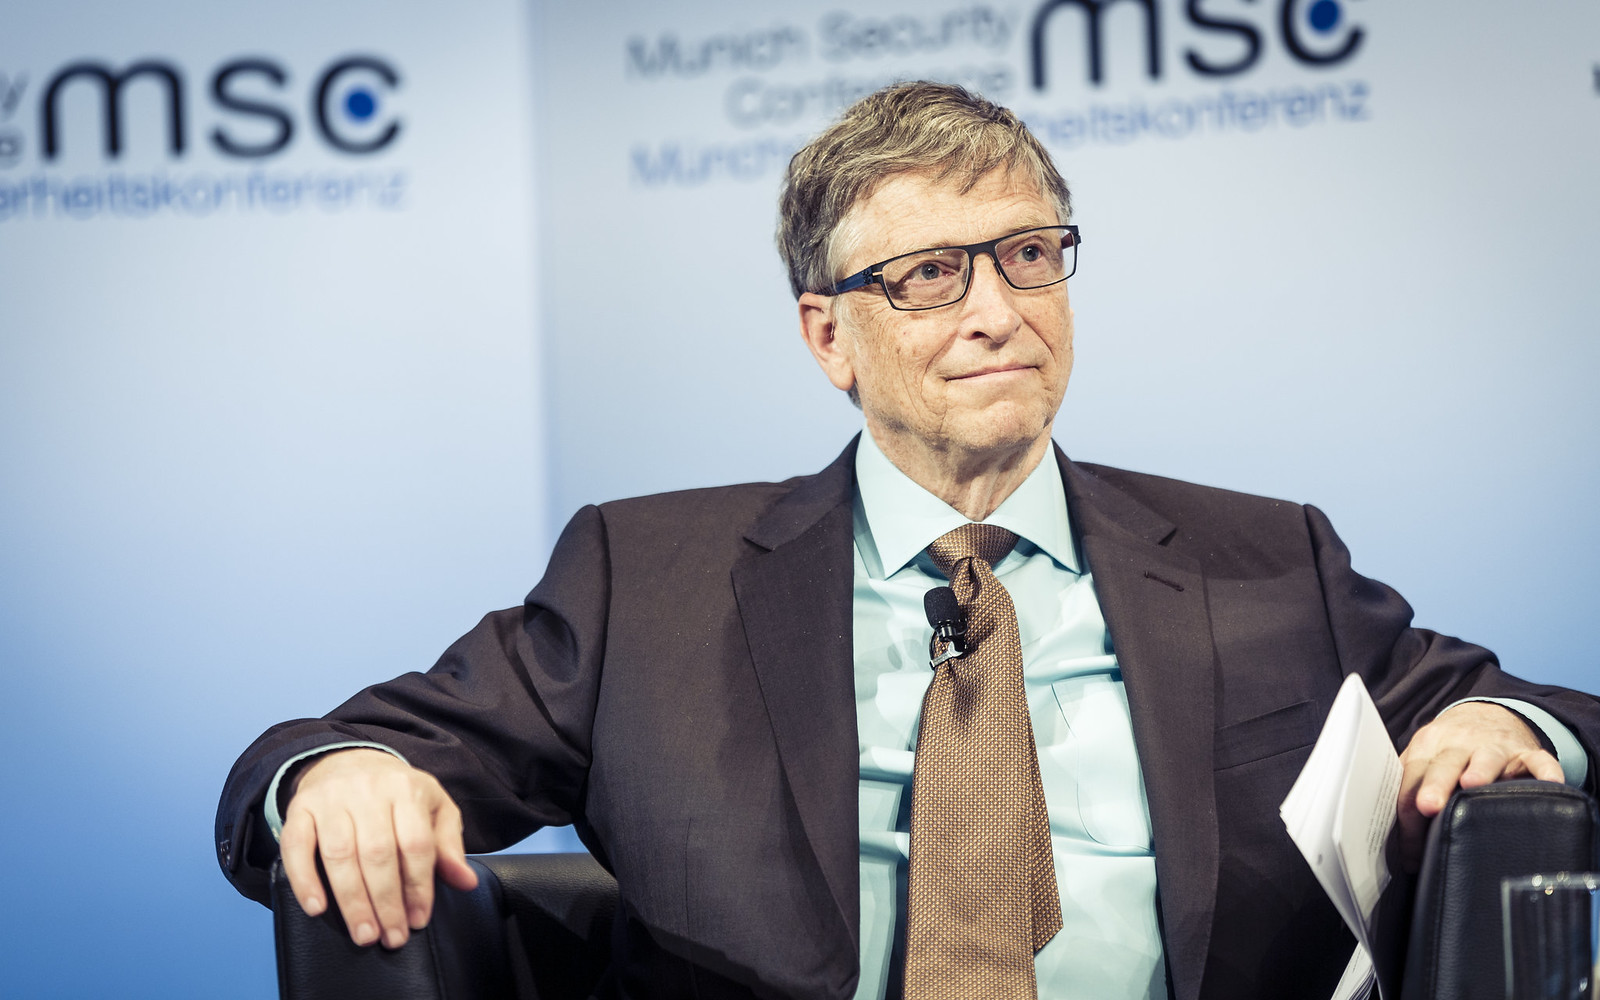 Koks turtingas būtų Billas Gatesas, jei būtų likęs „Microsoft“?